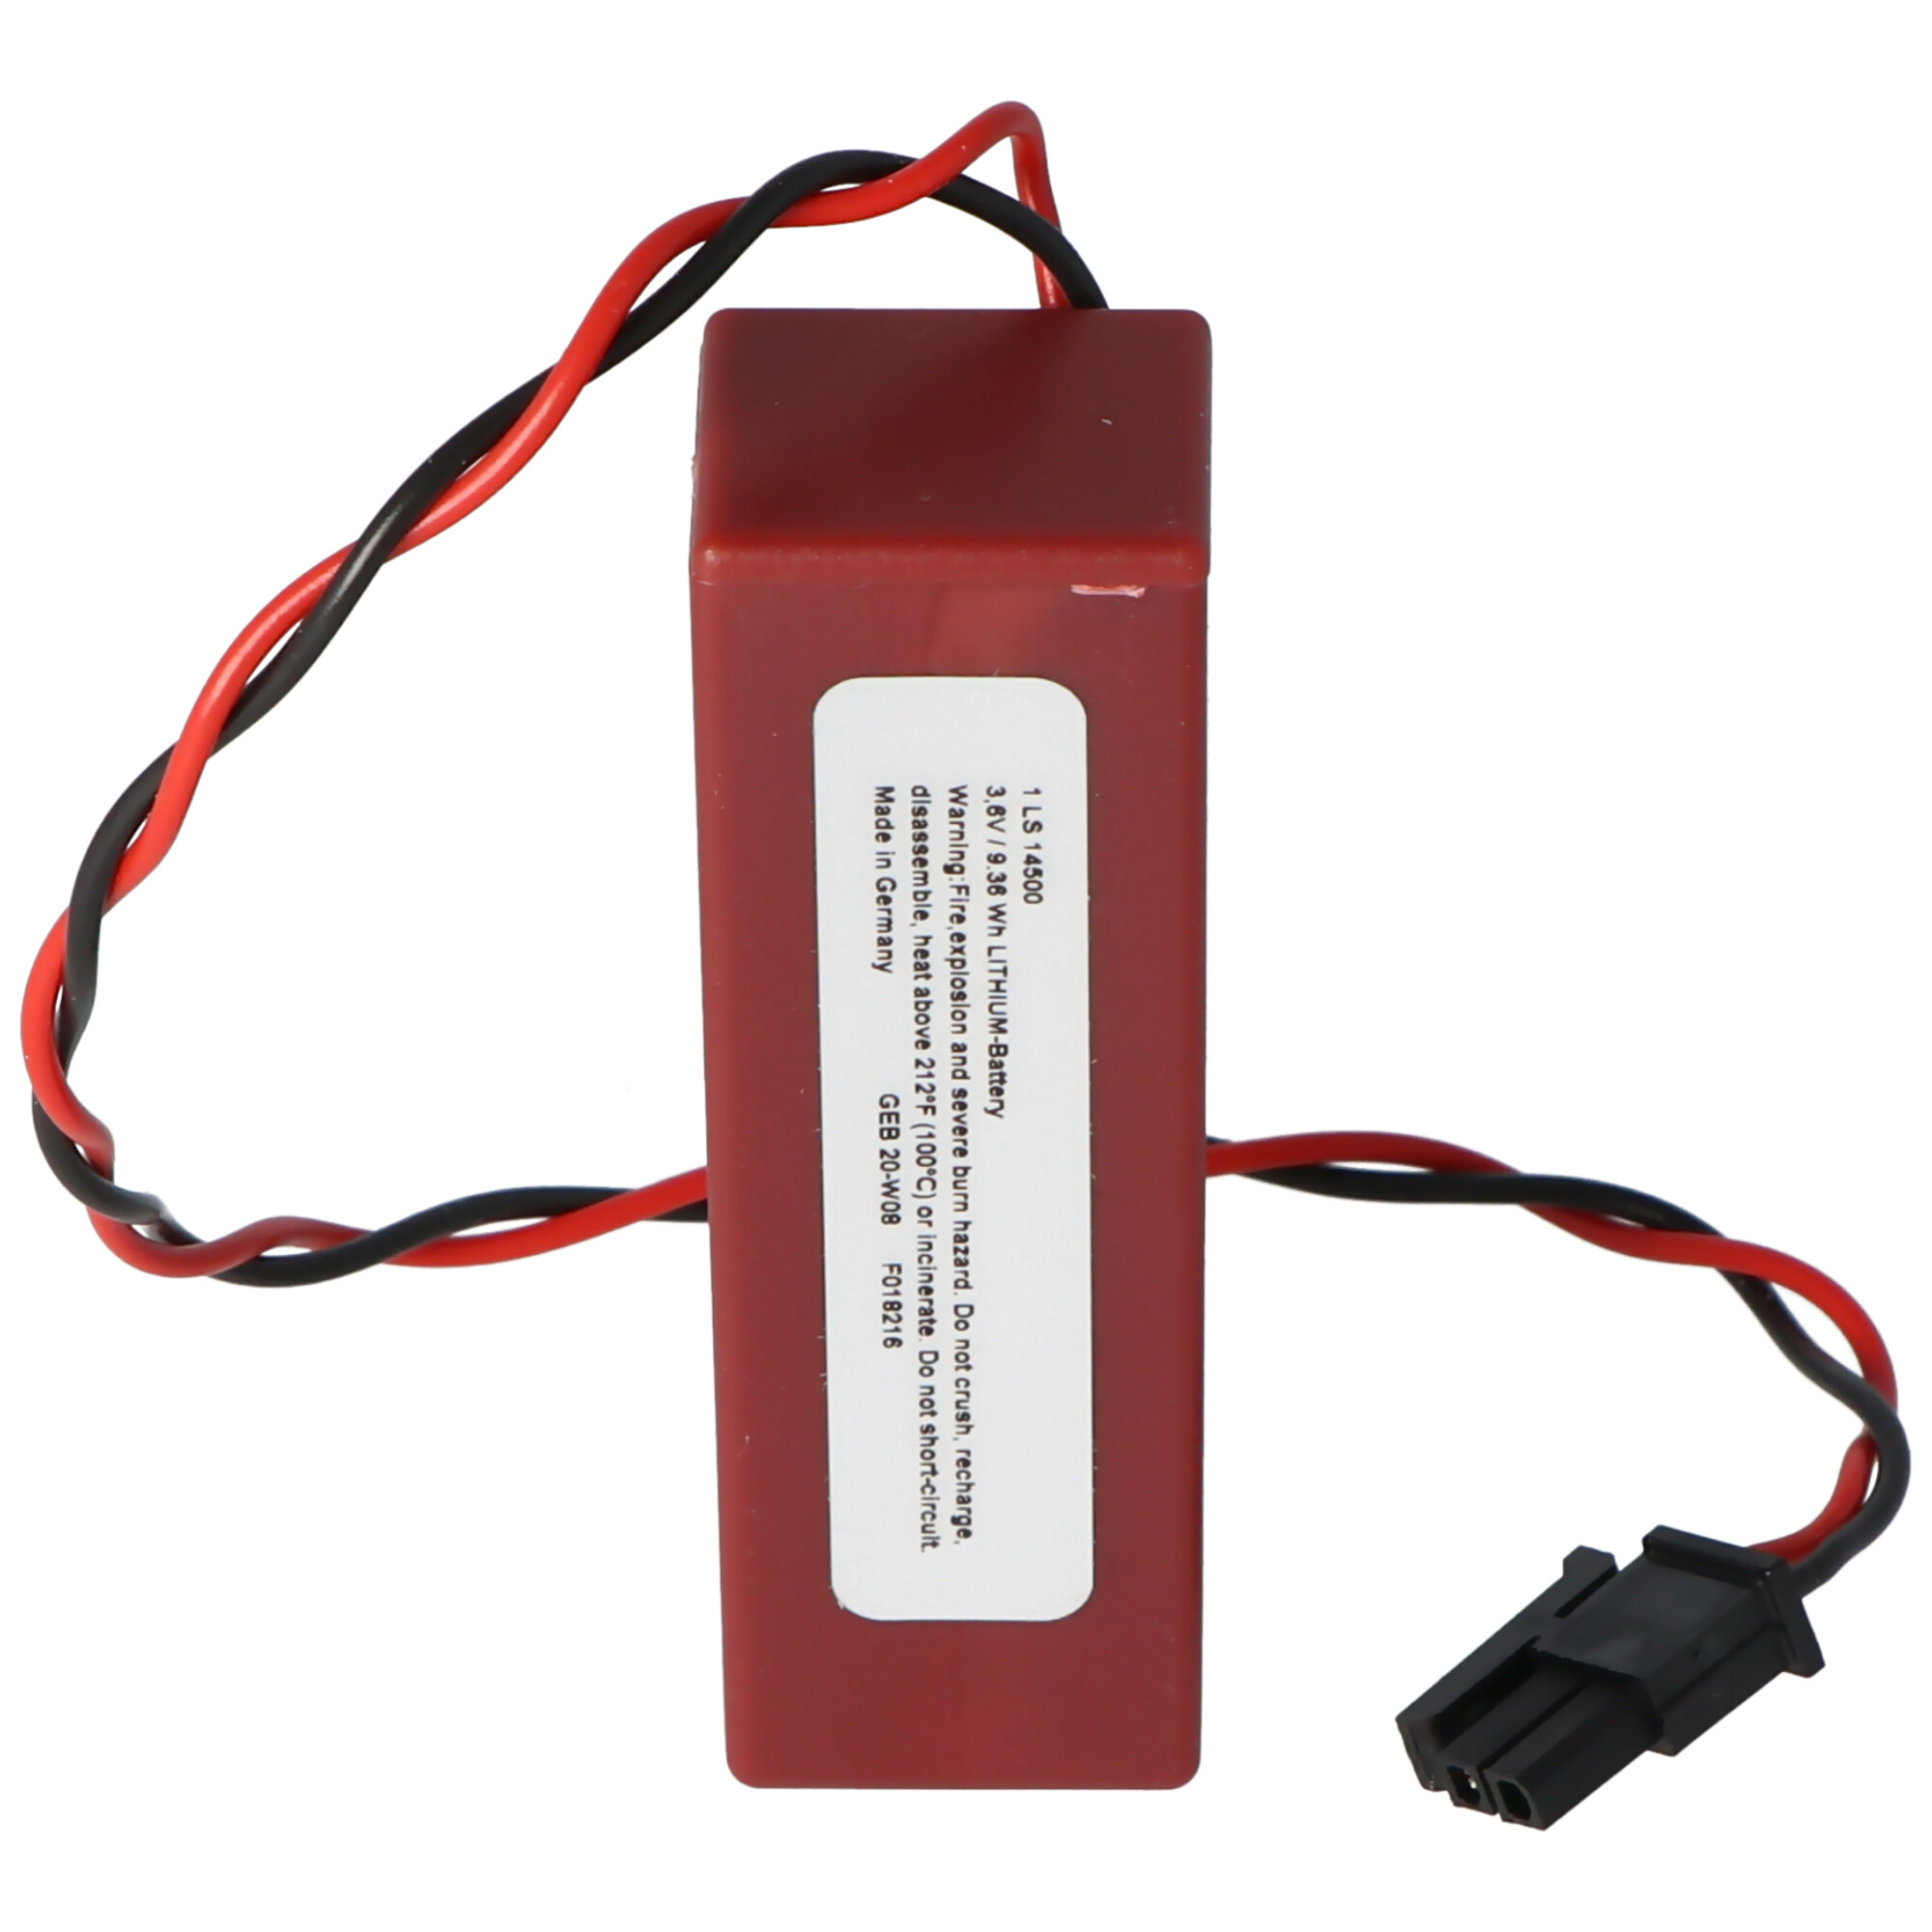 Saft Lithoguard 1LS14500 Lithium-Thionyl-Chloride Batterie Tadiran TL-5242/W, bitte unbedingt Stecker beachten